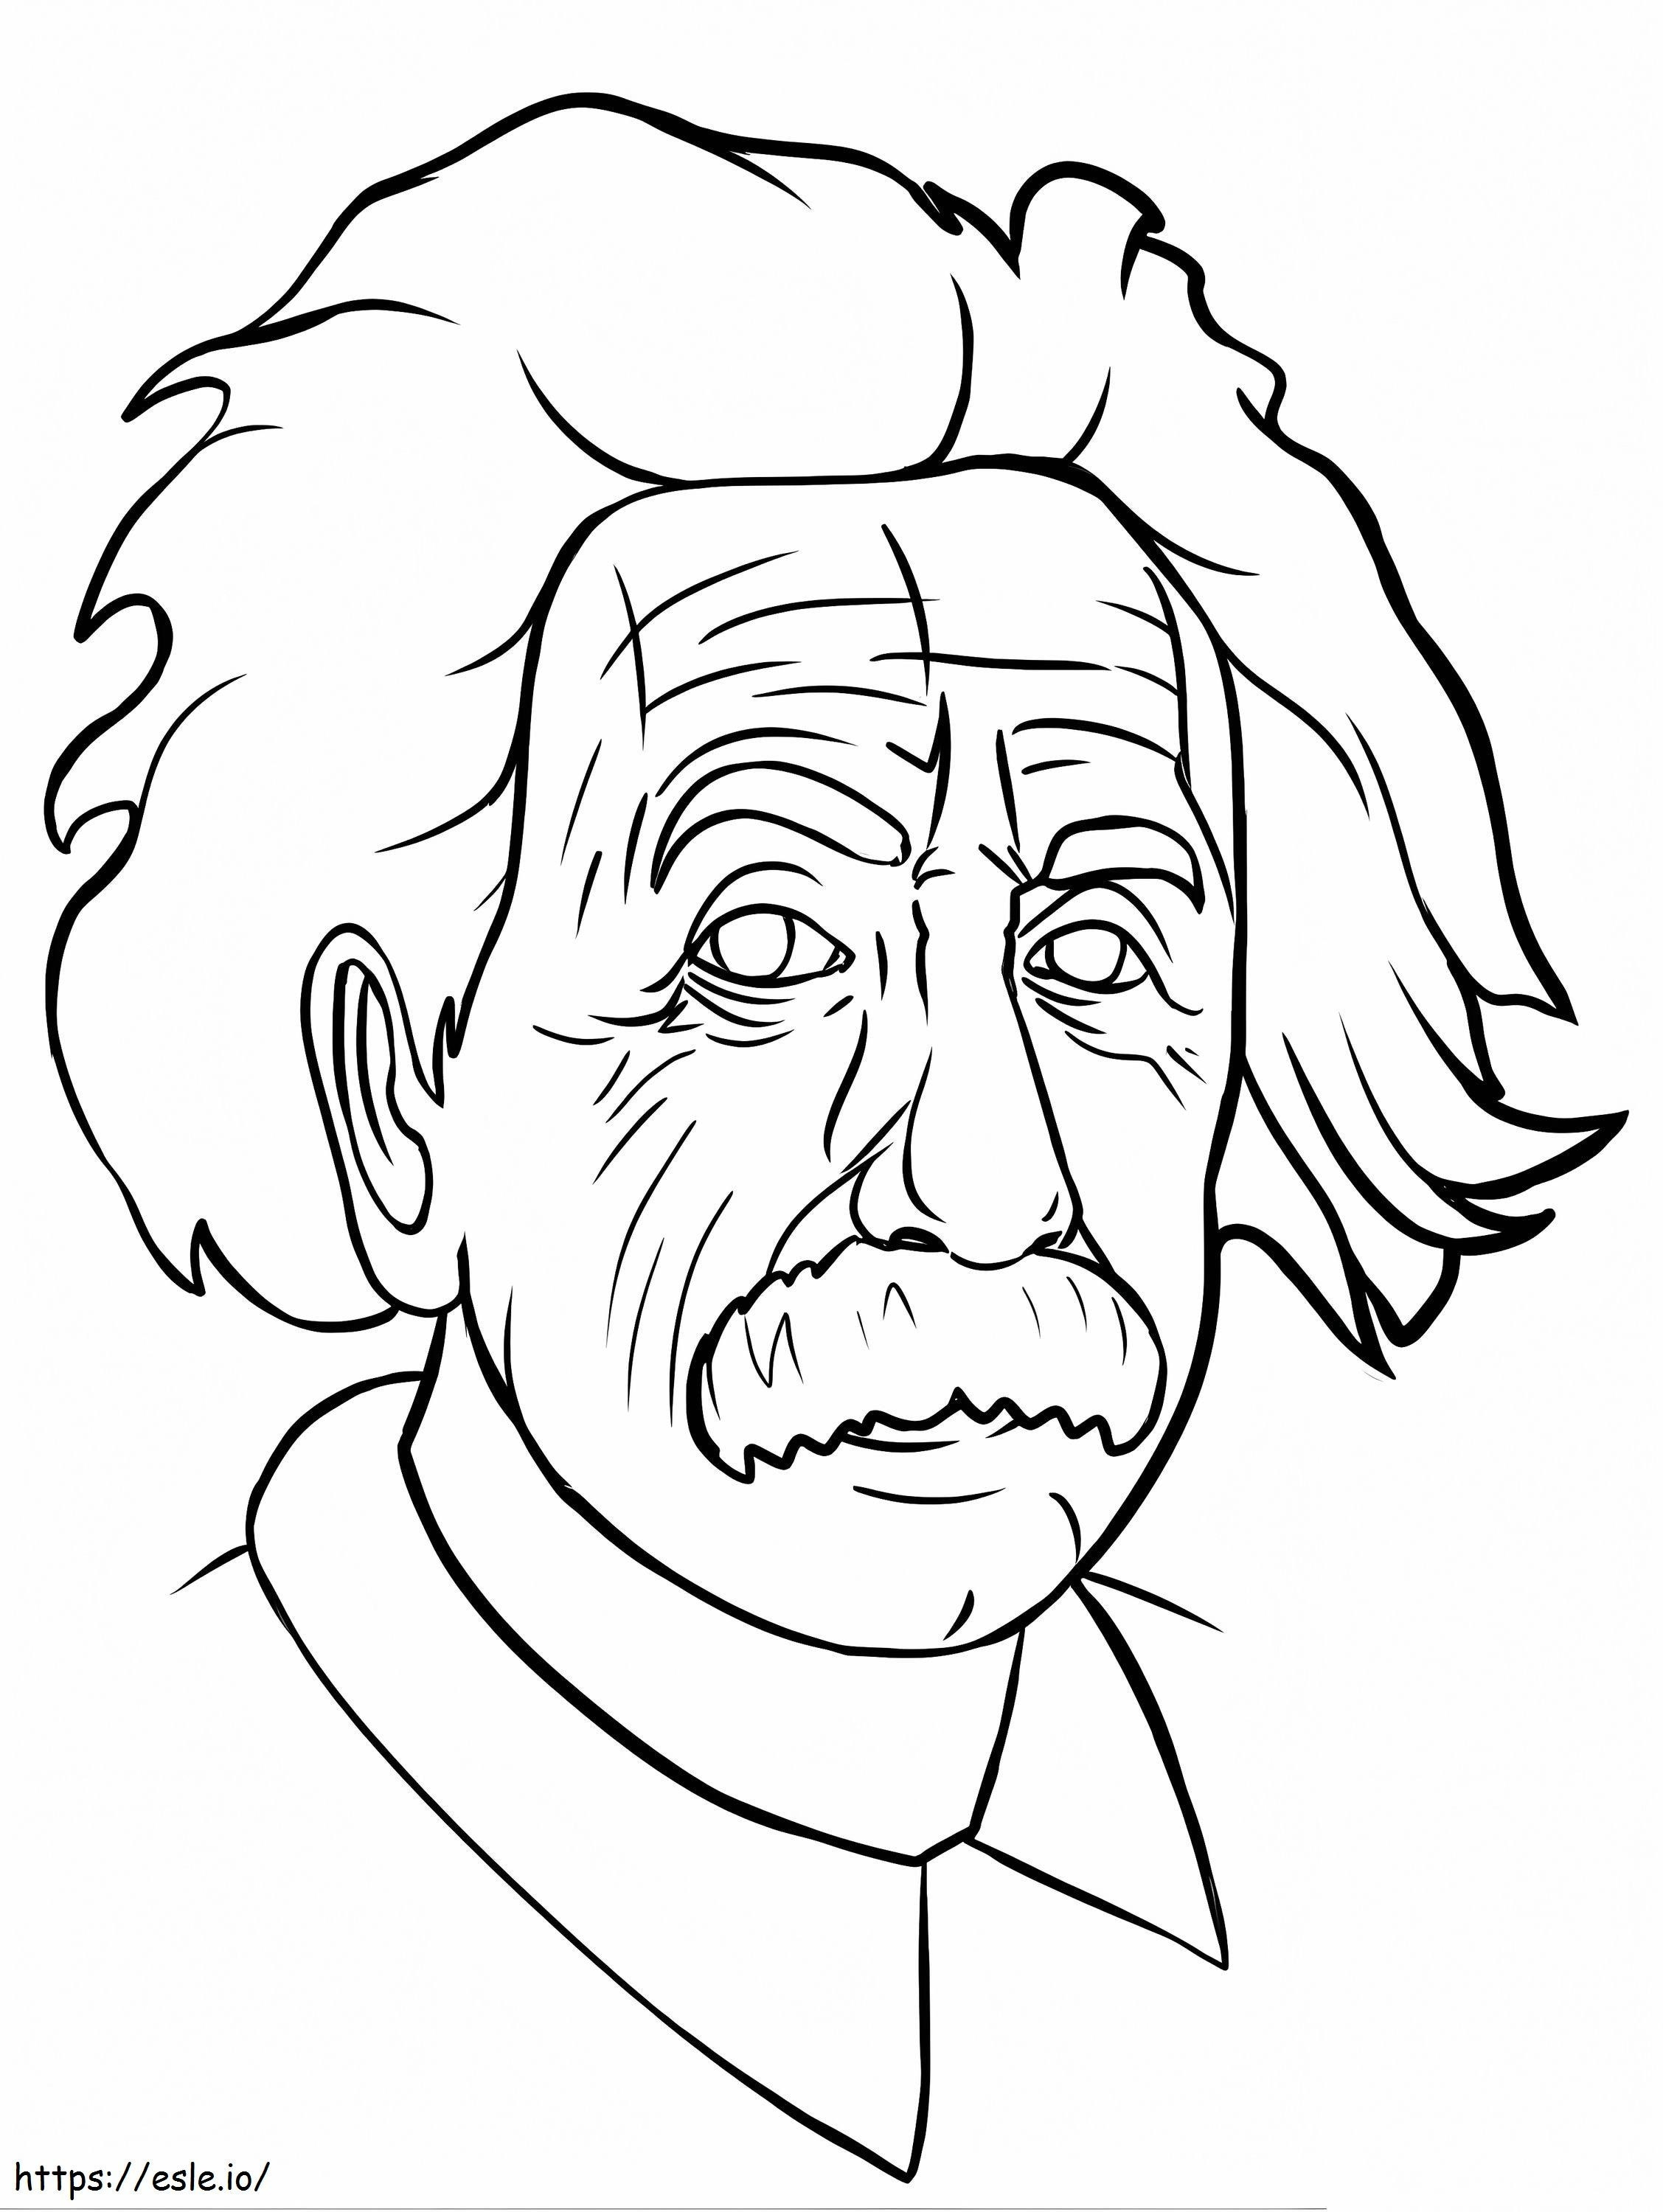 Twarz Einsteina kolorowanka